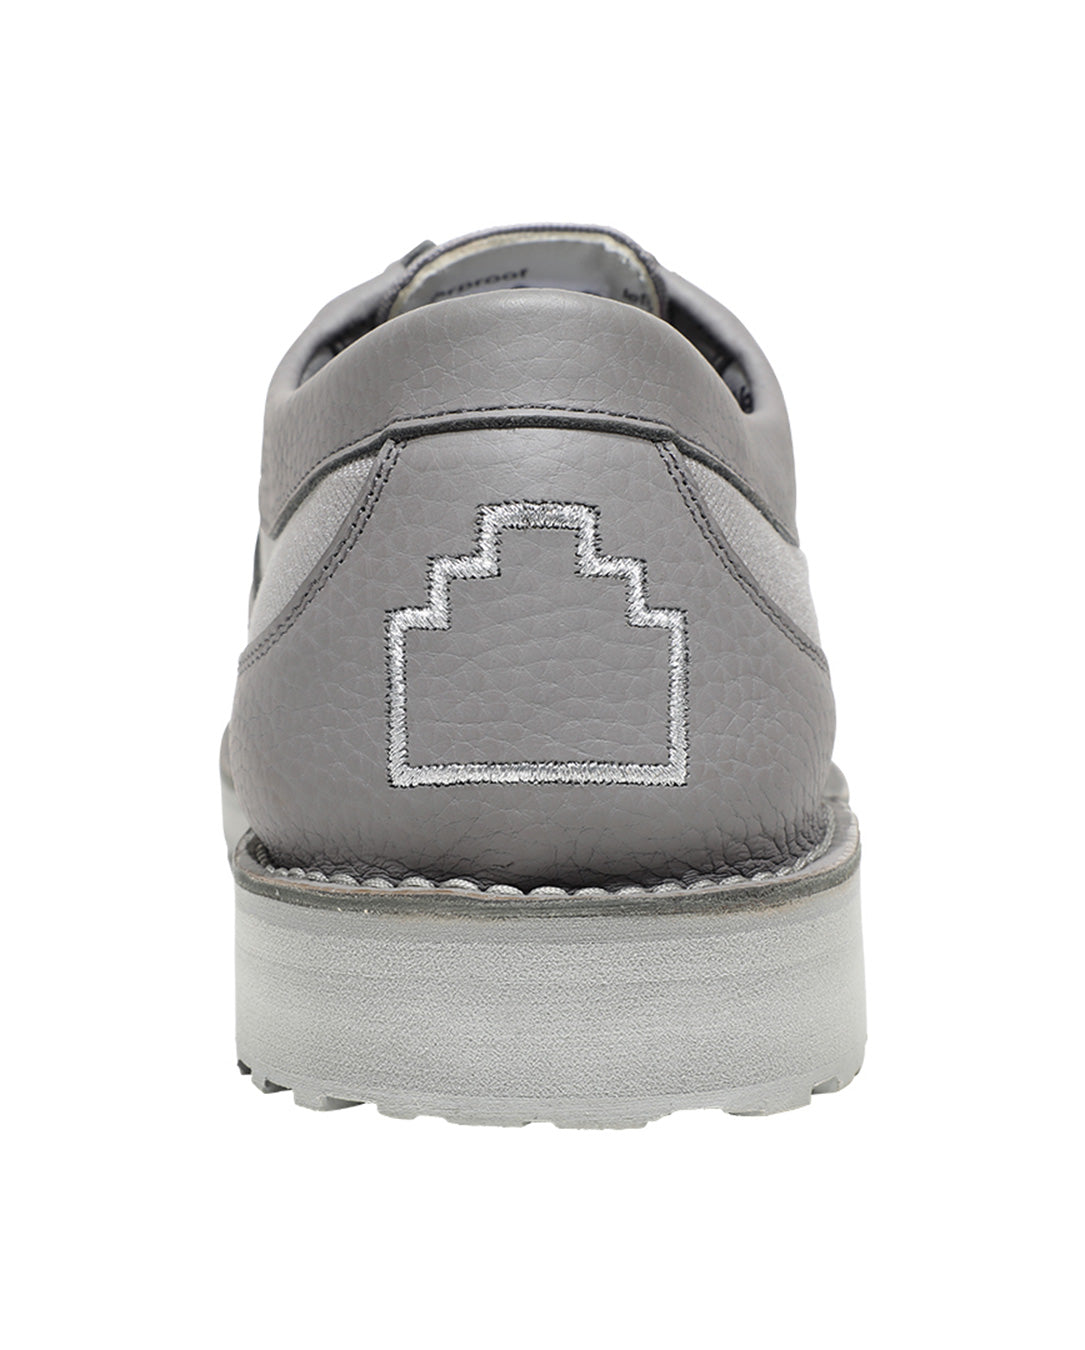 Cav Shoes #1 grey